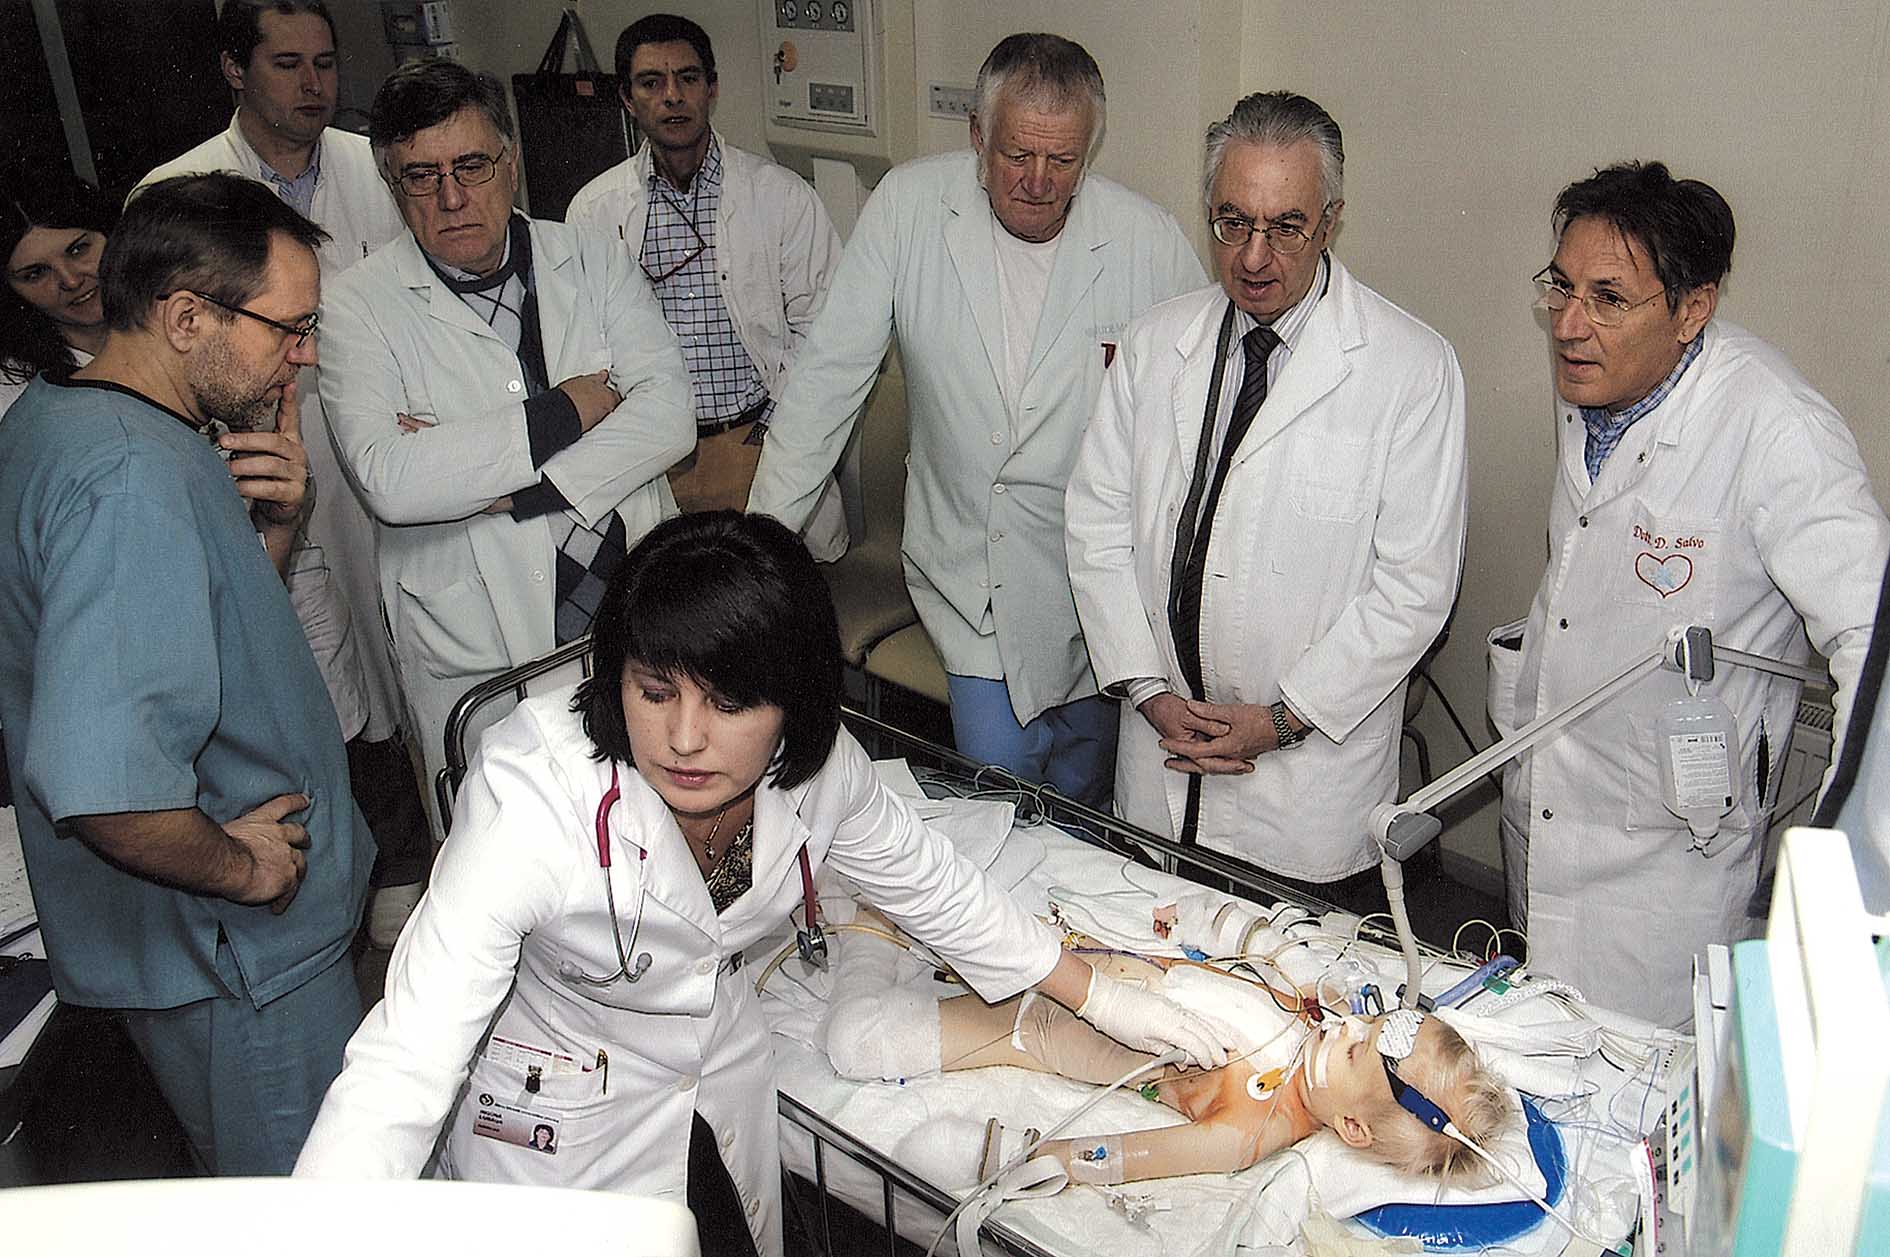 Kopš 2009. gada Latvijas bērnu kardioķirurgiem  veidojusies laba sadarbība ar itāļu kolēģiem.  Dr. Lubaua izmeklē mazo pacientu pēc operācijas